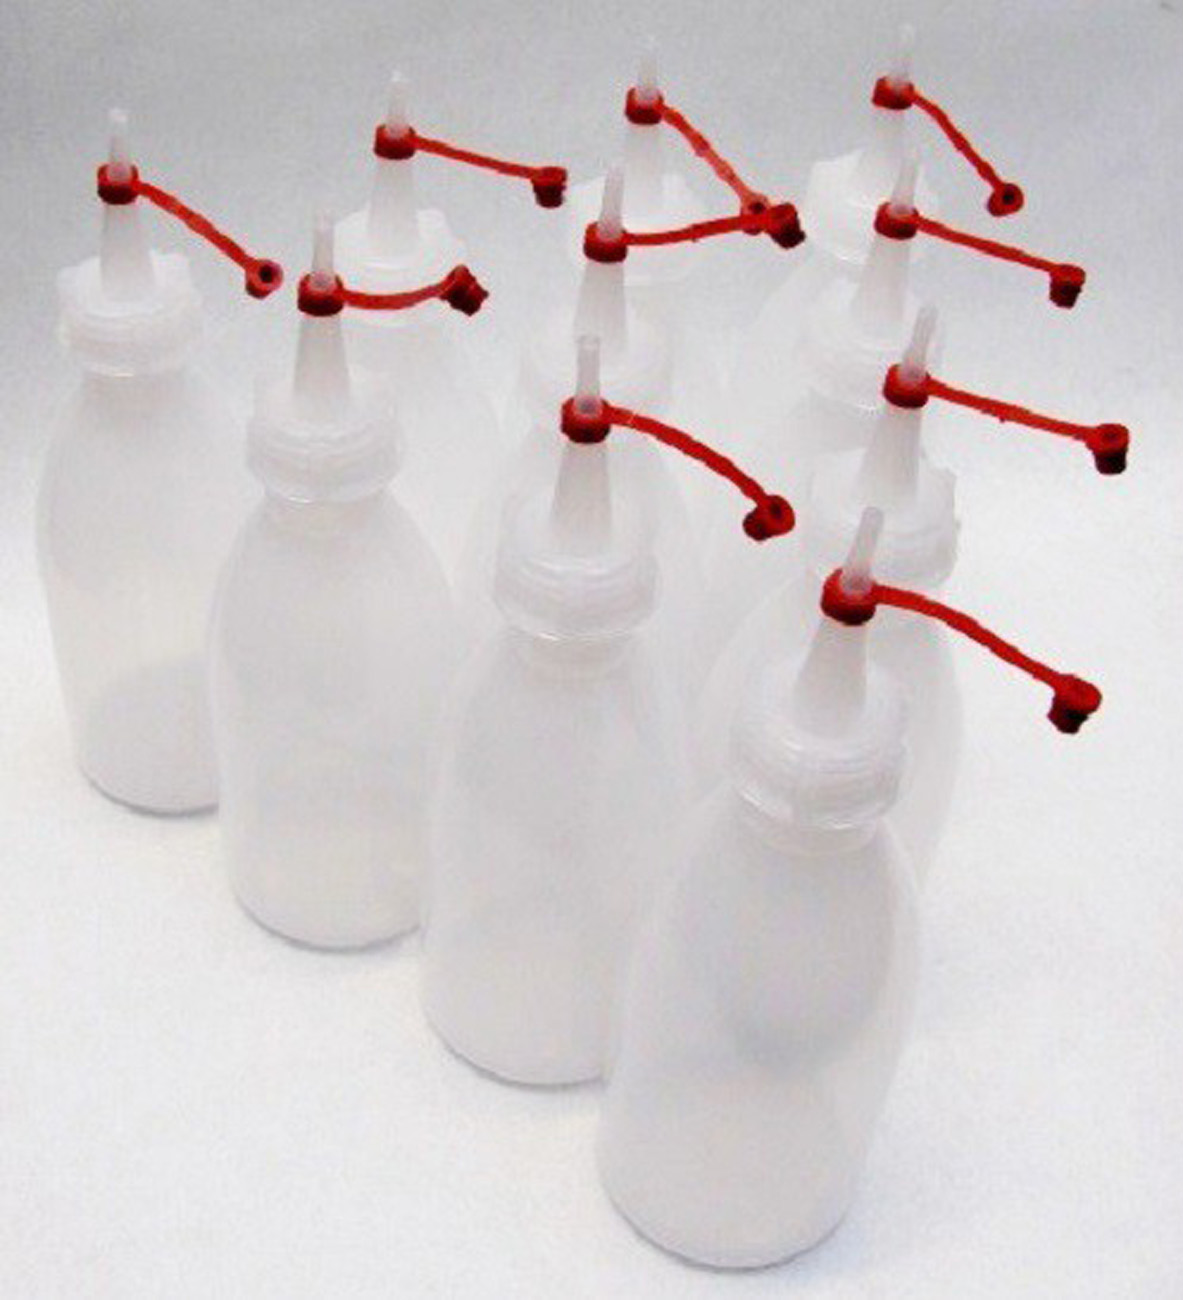 10 x Enghalsflasche Laborflasche 250 ml + Deckel Flasche Spritzflasche aus PE-LD